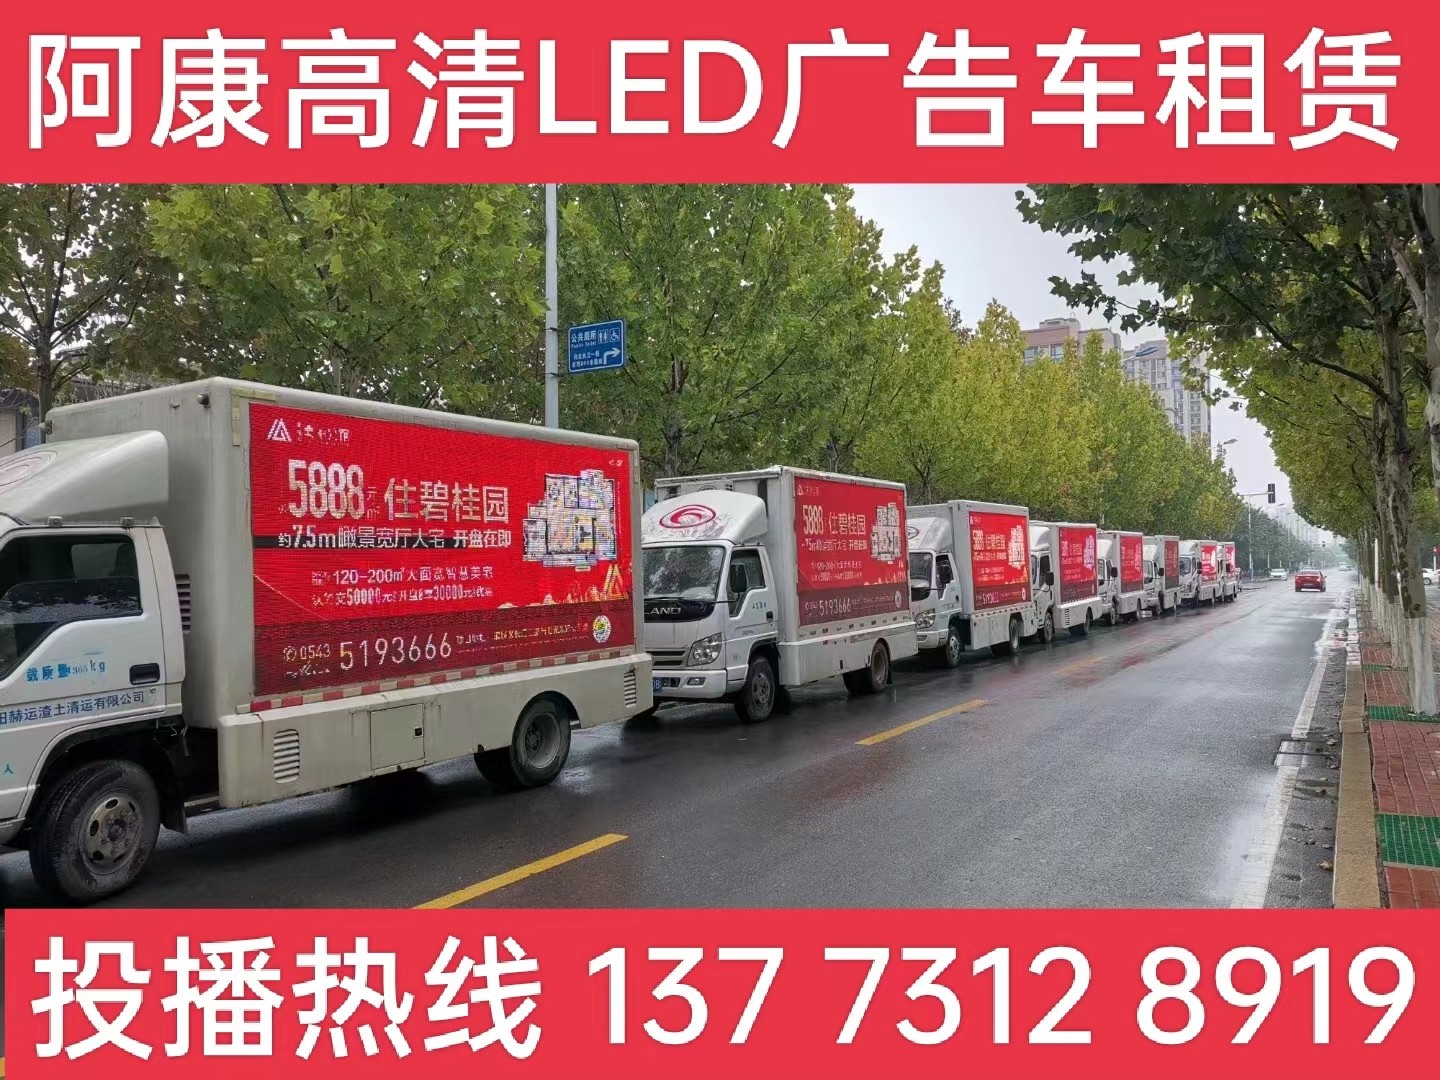 德清县宣传车租赁公司-楼盘LED广告车投放